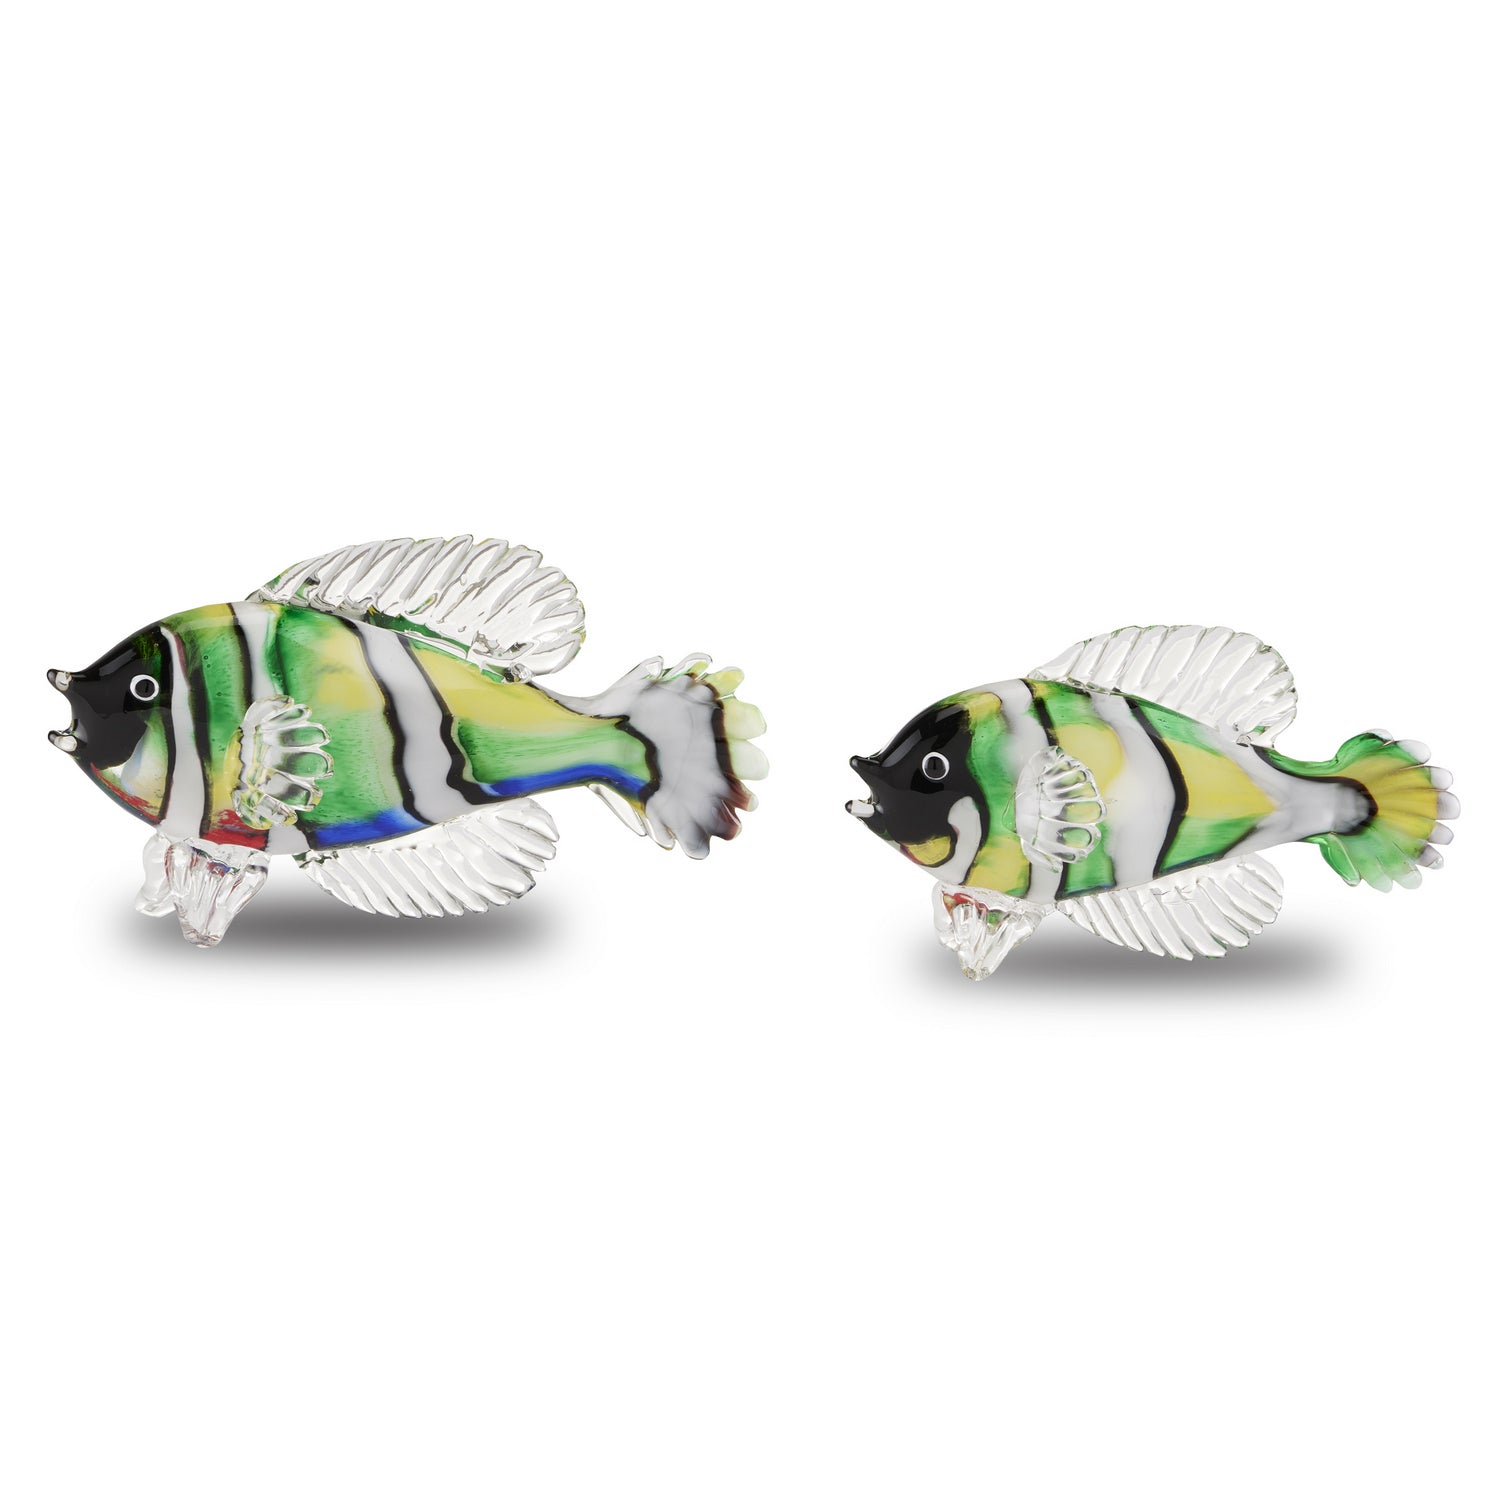 Currey and Company - 1200-0564 - Fish Set of 2 - Rialto - Green/Black/White/Multicolor